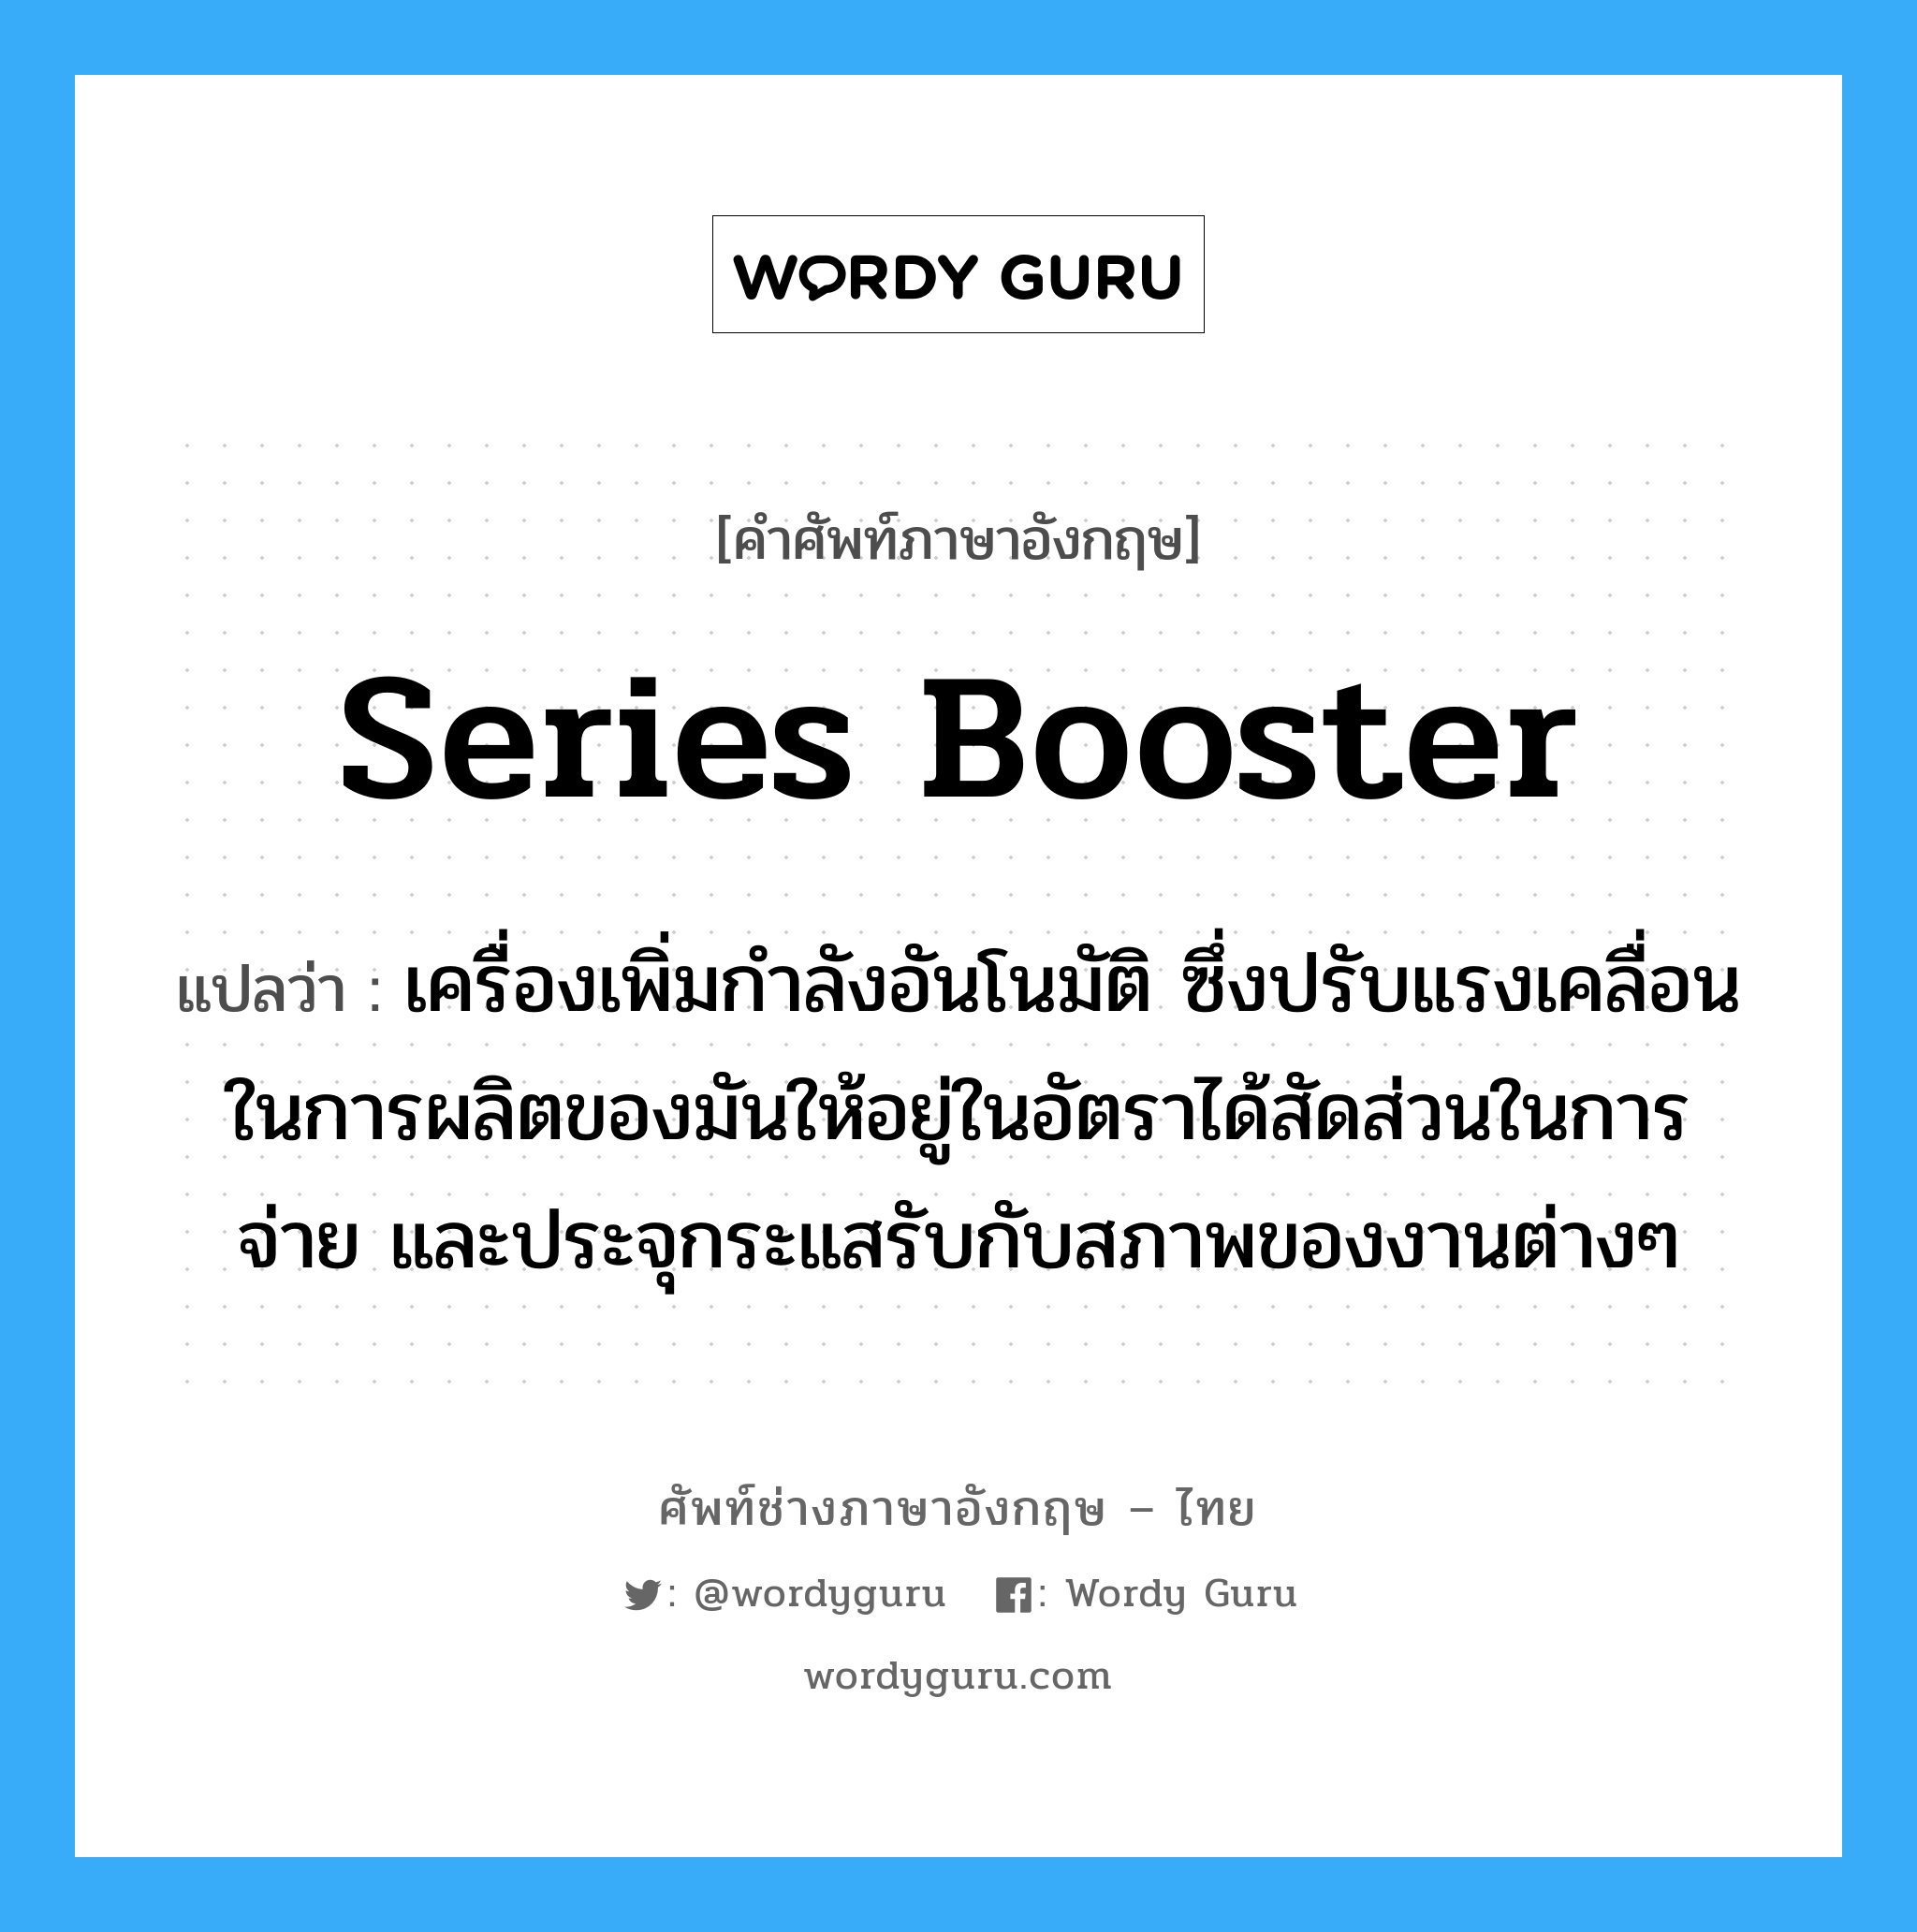 series booster แปลว่า?, คำศัพท์ช่างภาษาอังกฤษ - ไทย series booster คำศัพท์ภาษาอังกฤษ series booster แปลว่า เครื่องเพิ่มกำลังอันโนมัติ ซึ่งปรับแรงเคลื่อนในการผลิตของมันให้อยู่ในอัตราได้สัดส่วนในการจ่าย และประจุกระแสรับกับสภาพของงานต่างๆ